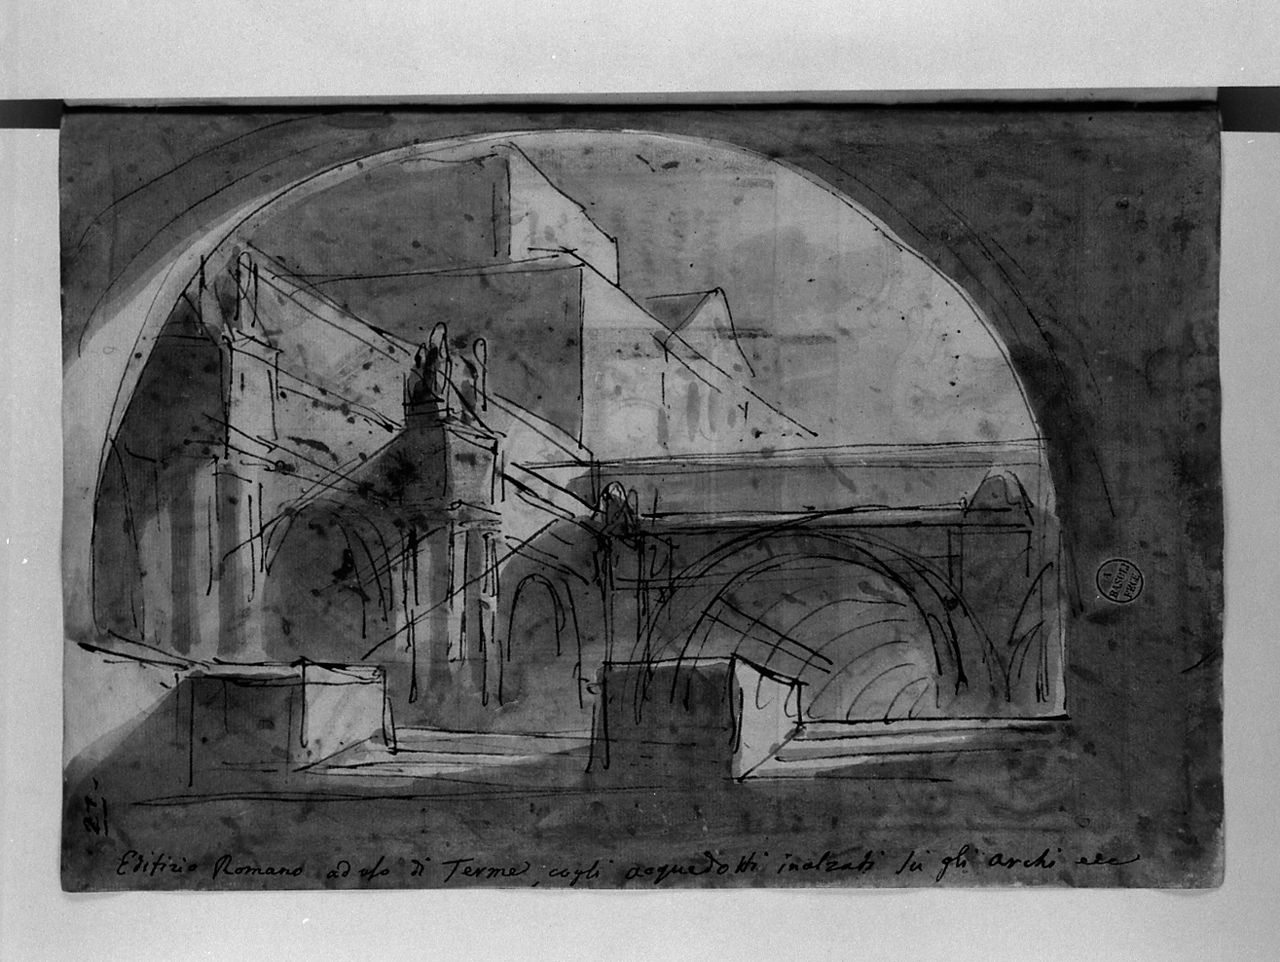 edifizio romano ad uso di terme cogli acquedotti inalzati su gli archi, architetture (disegno, elemento d'insieme) di Basoli Antonio (sec. XIX)